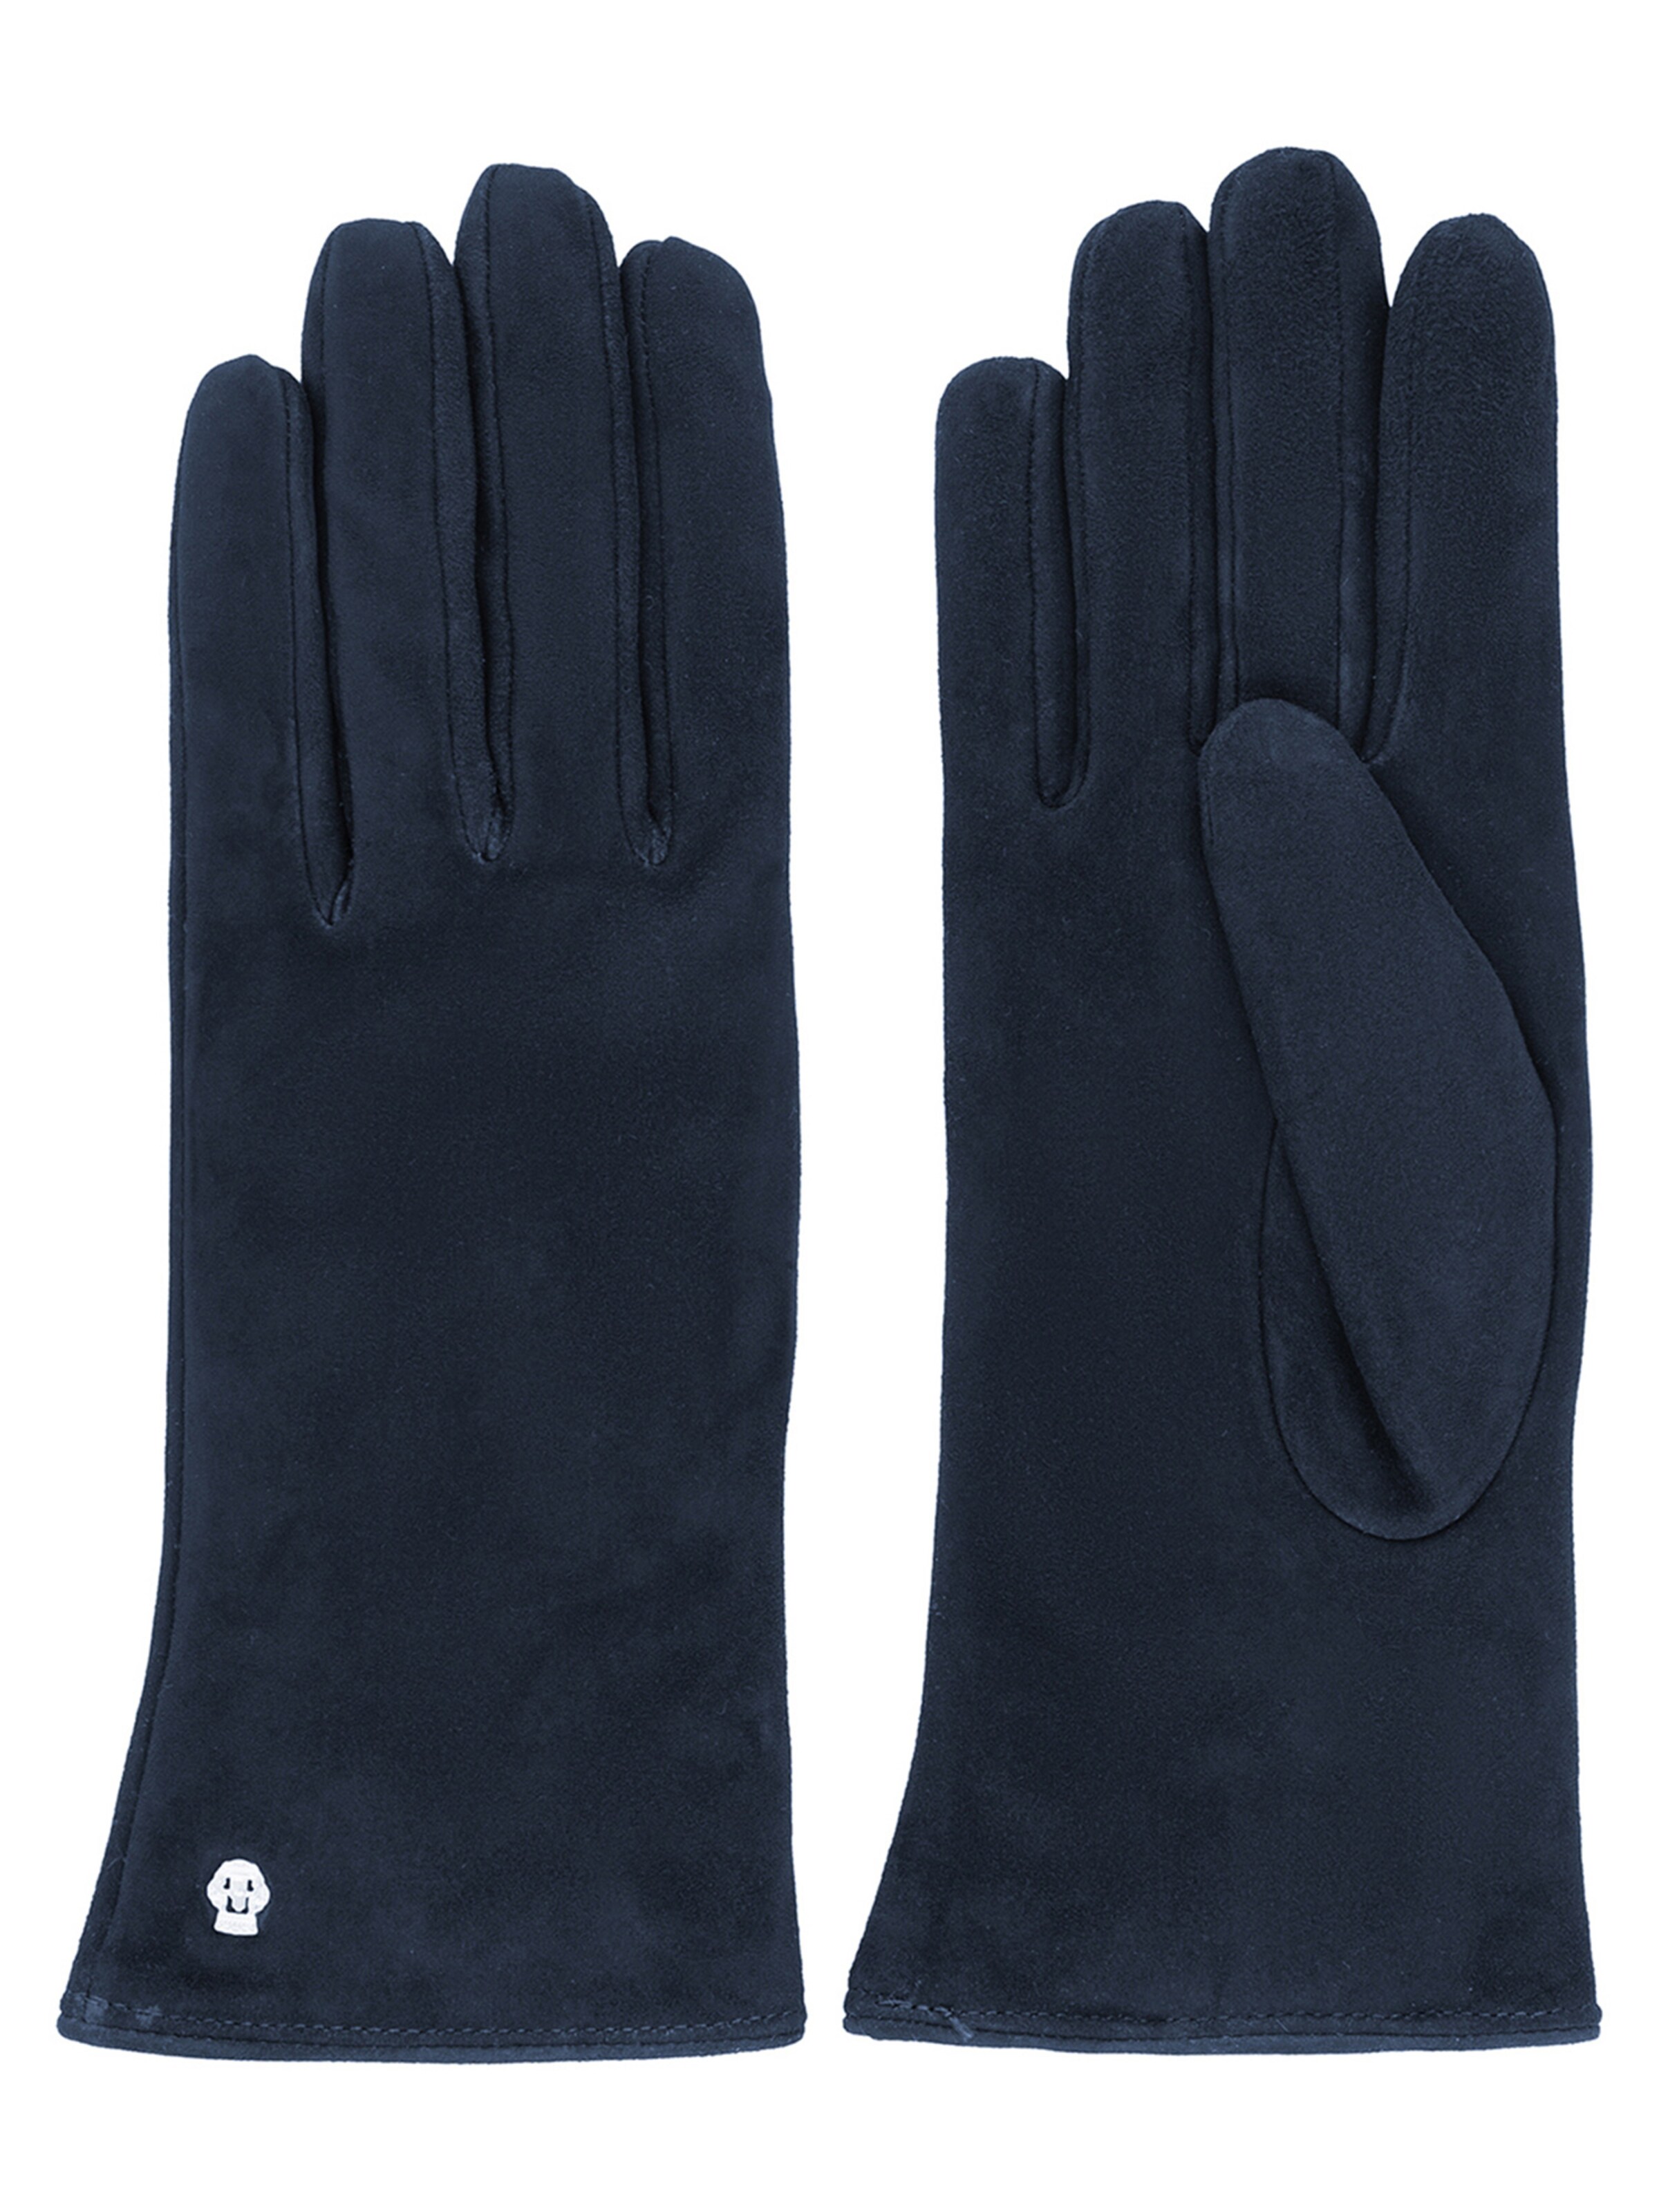 Roeckl Handschuhe in Blau, Dunkelblau 